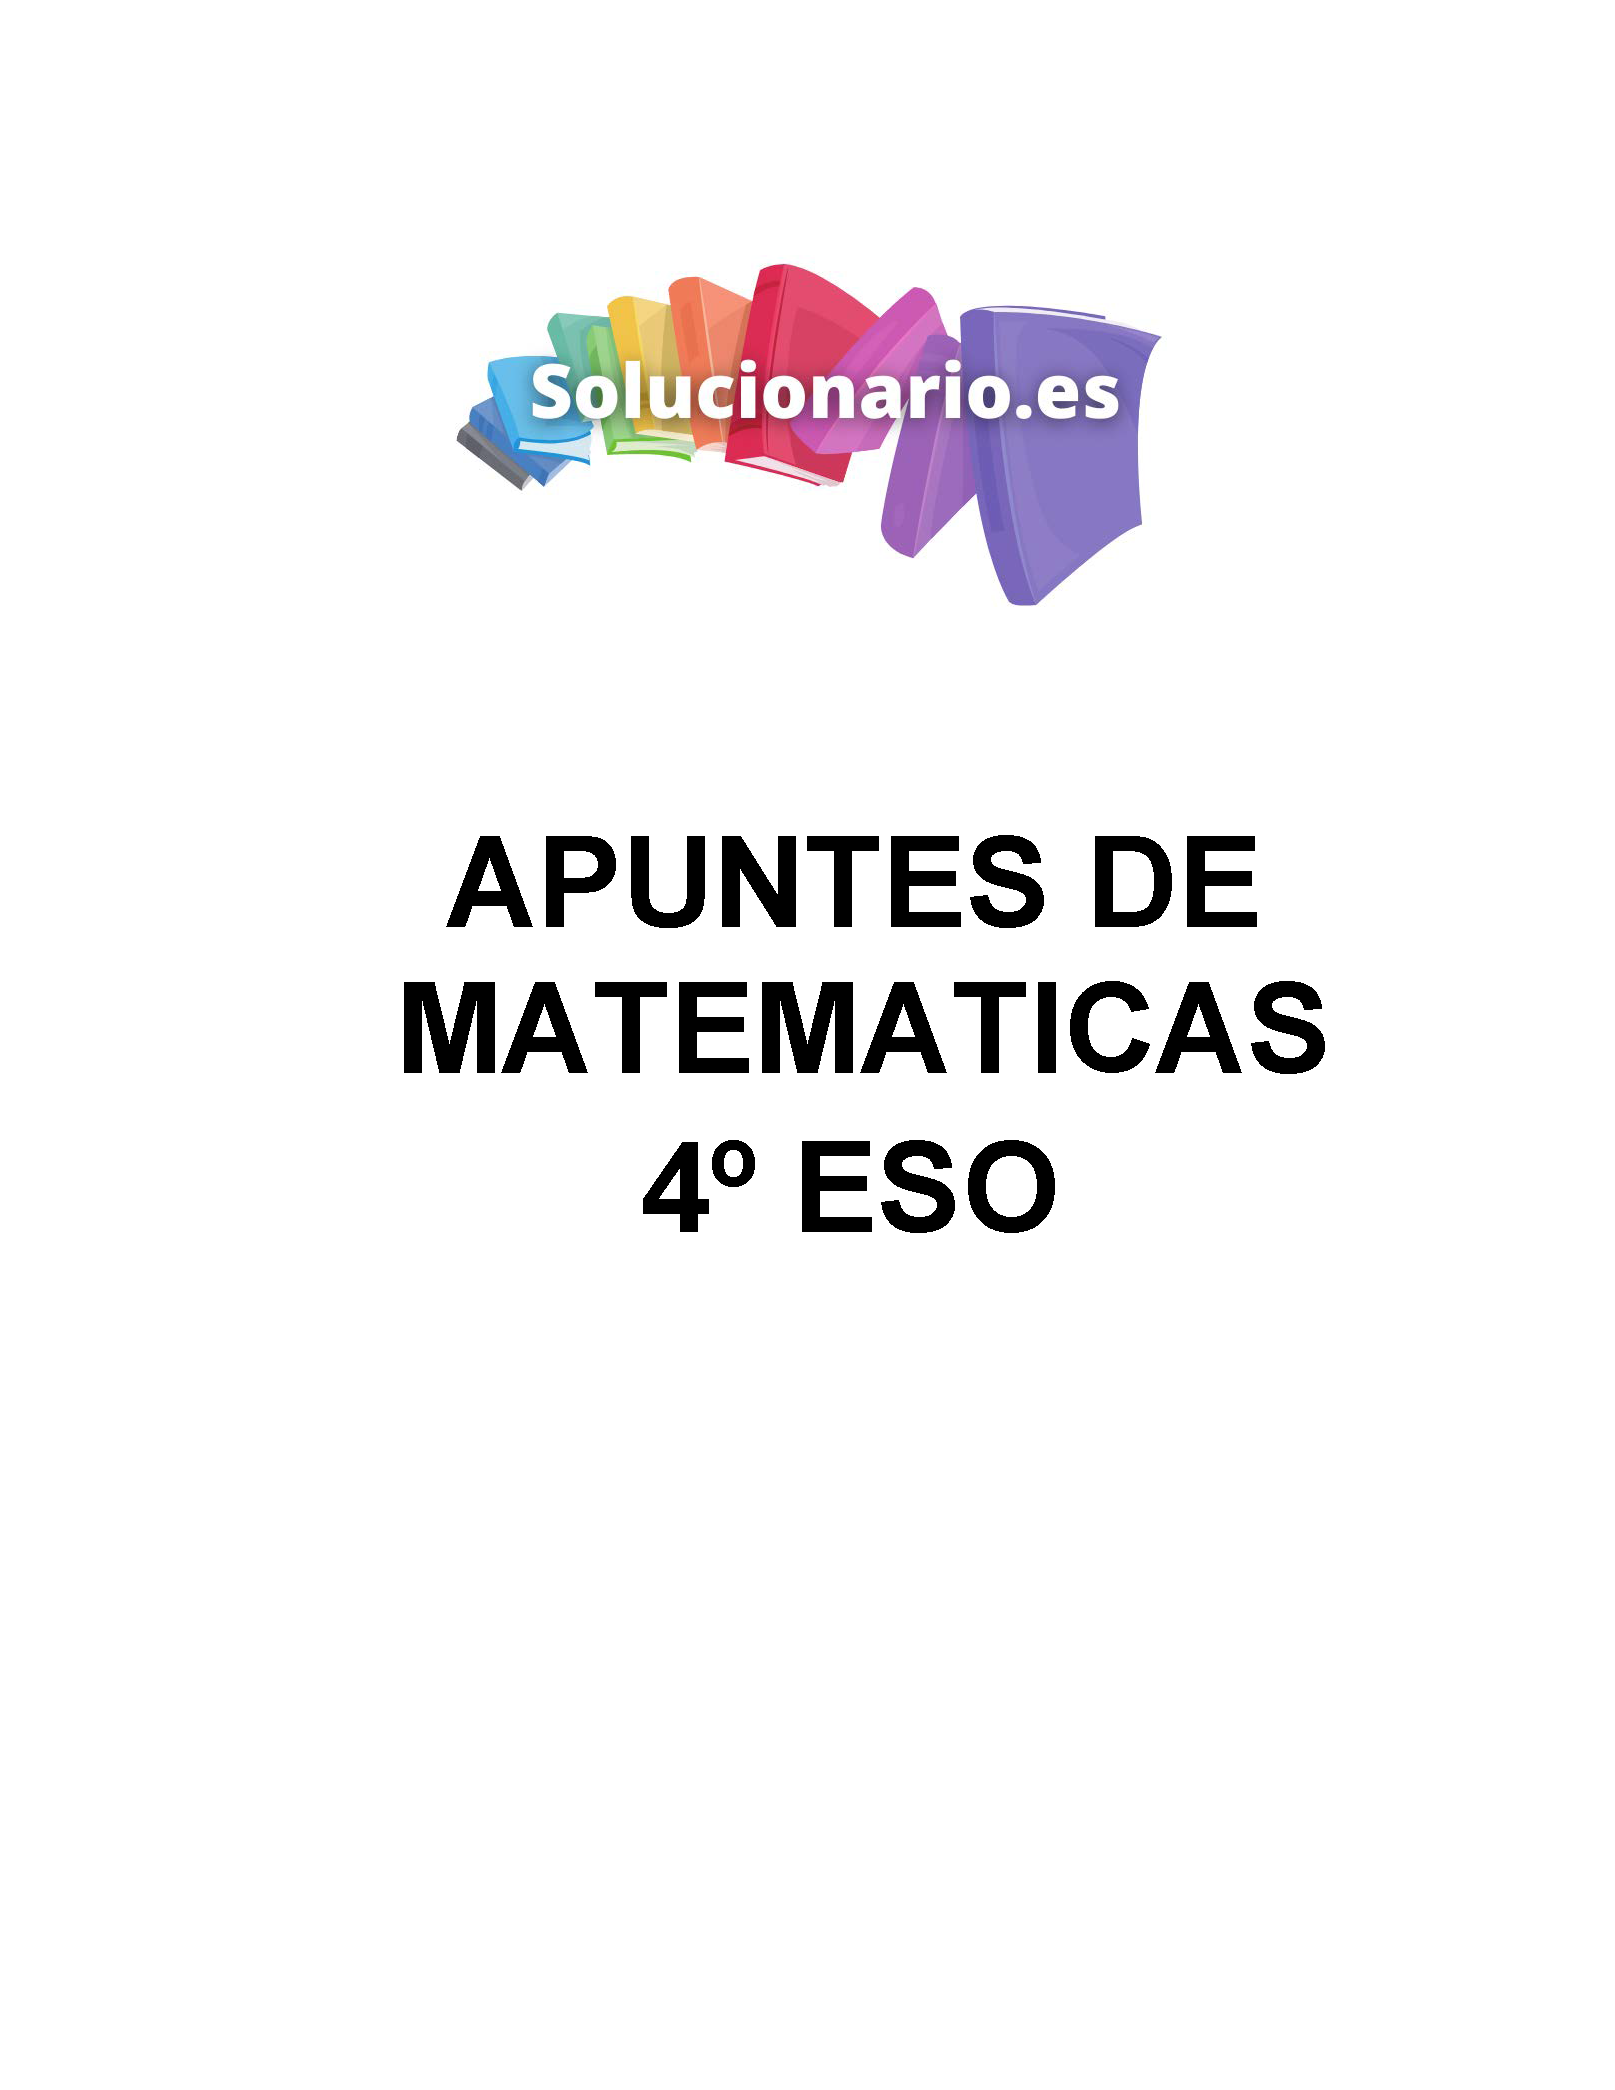 Apuntes Matemáticas Ecuaciones y Sistemas 4 ESO 2020 / 2021